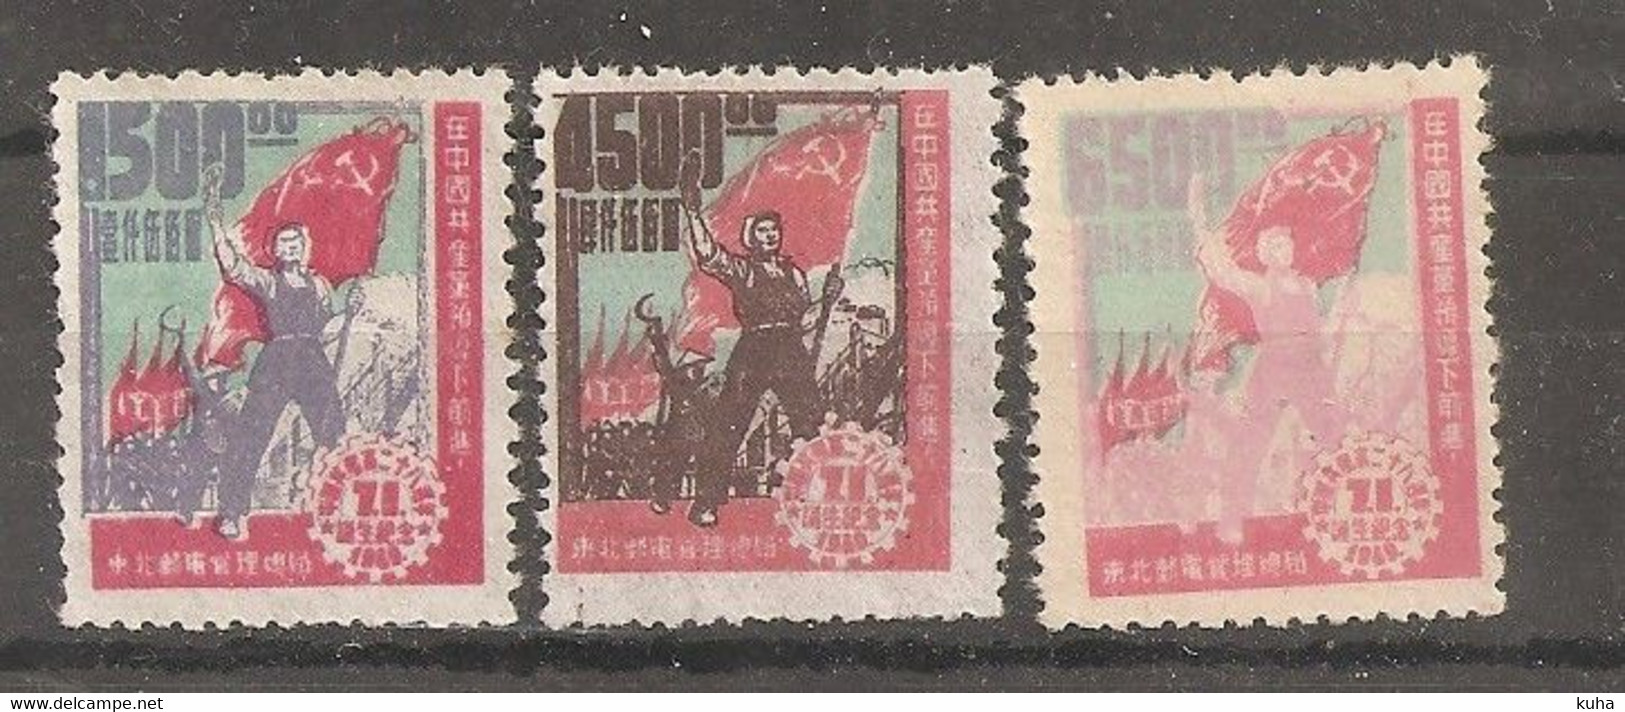 China Chine  Nord China 1949 - Northern China 1949-50